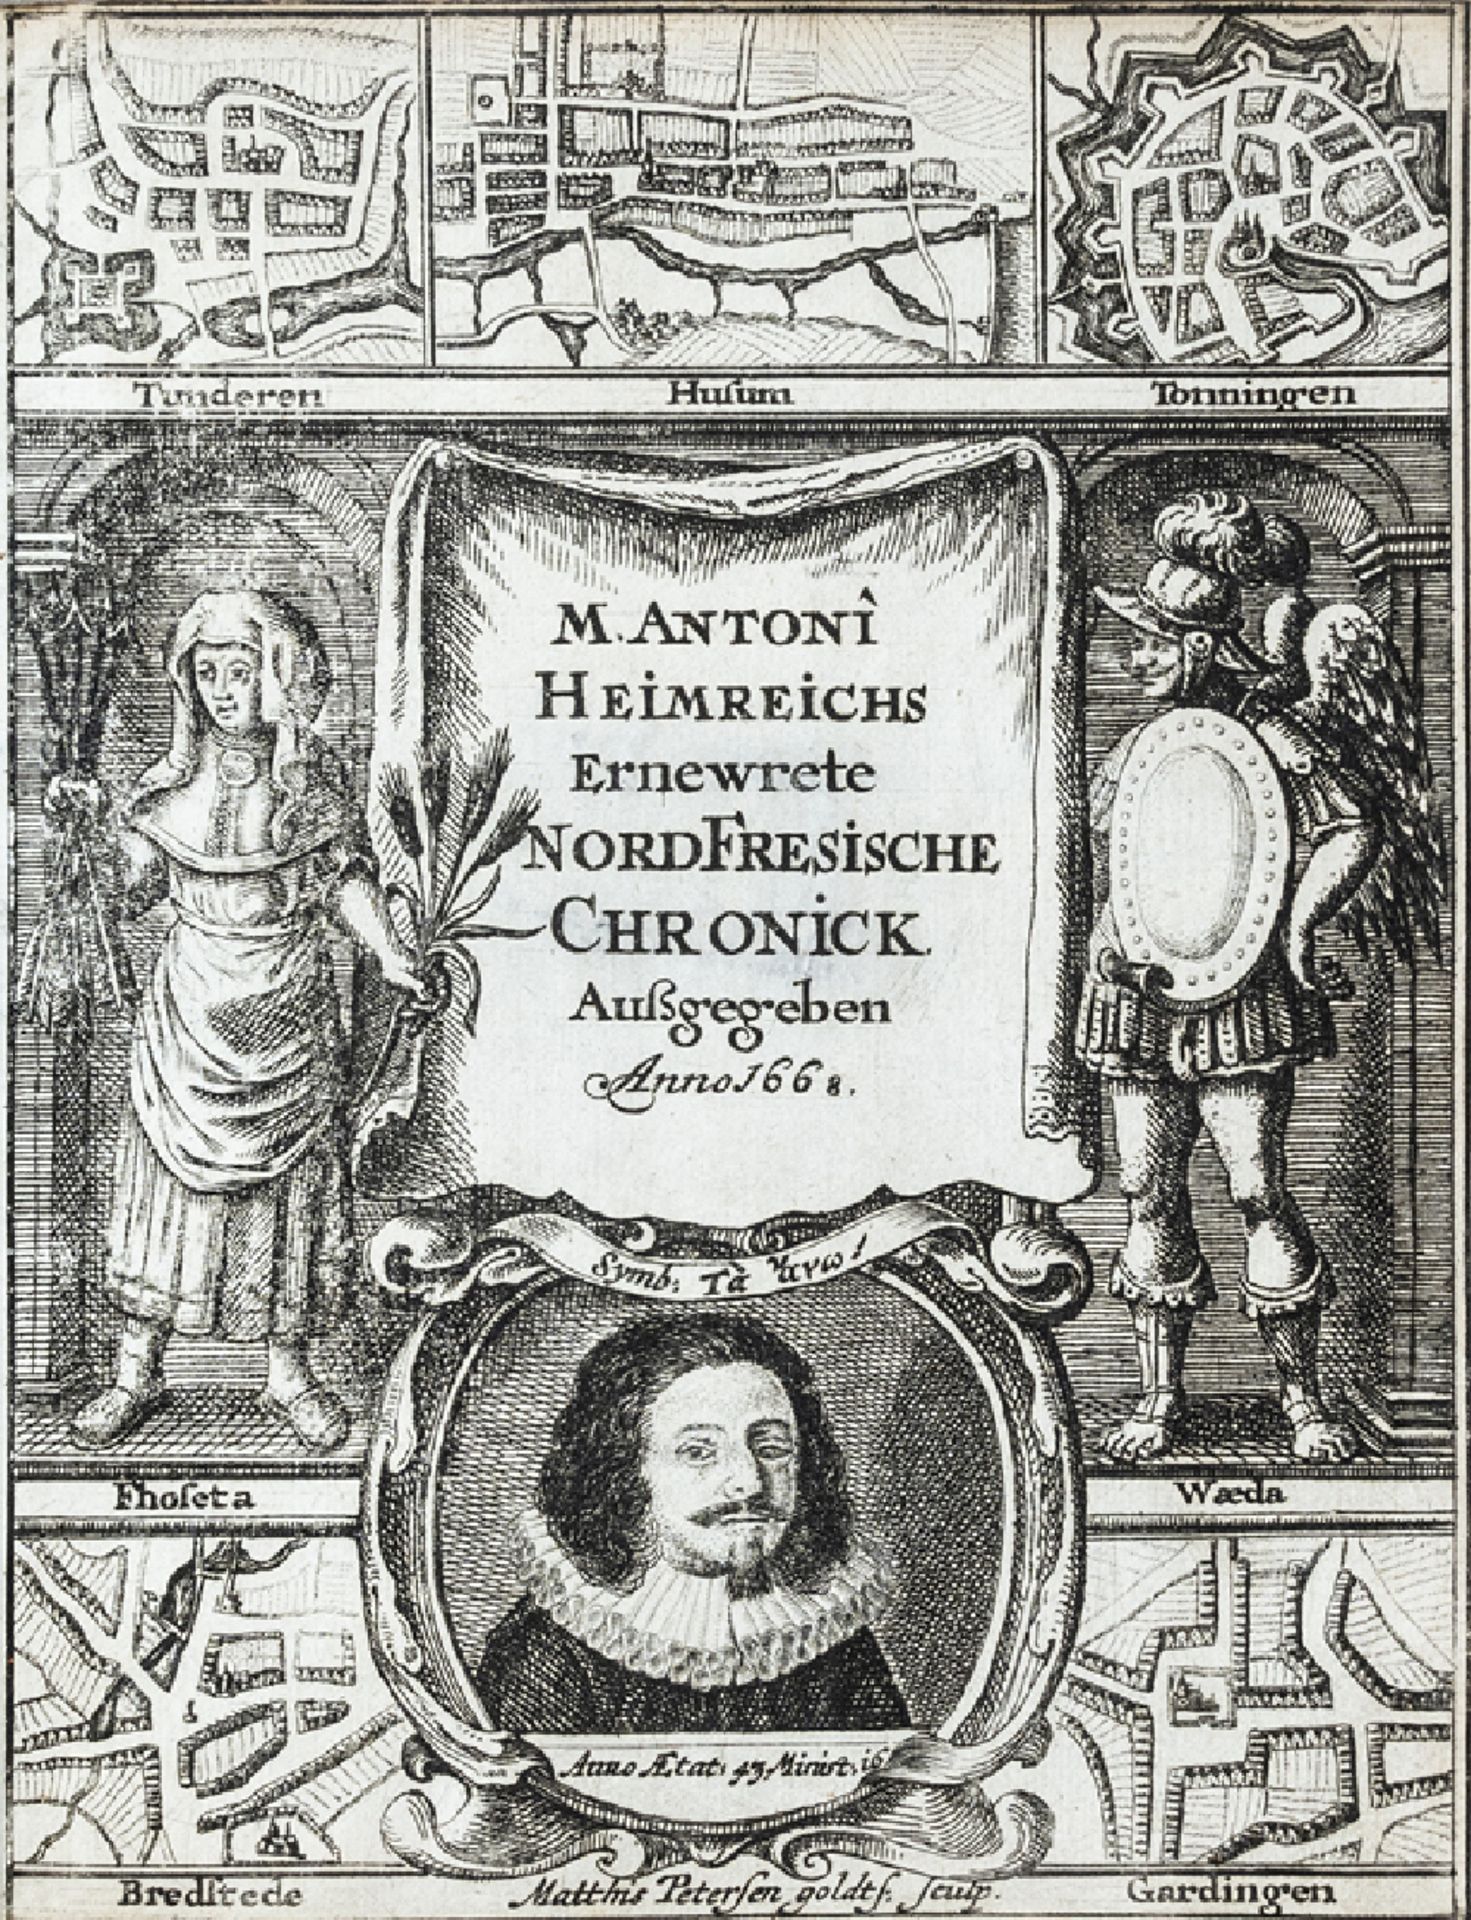 Heimreich - Chronick, 1668